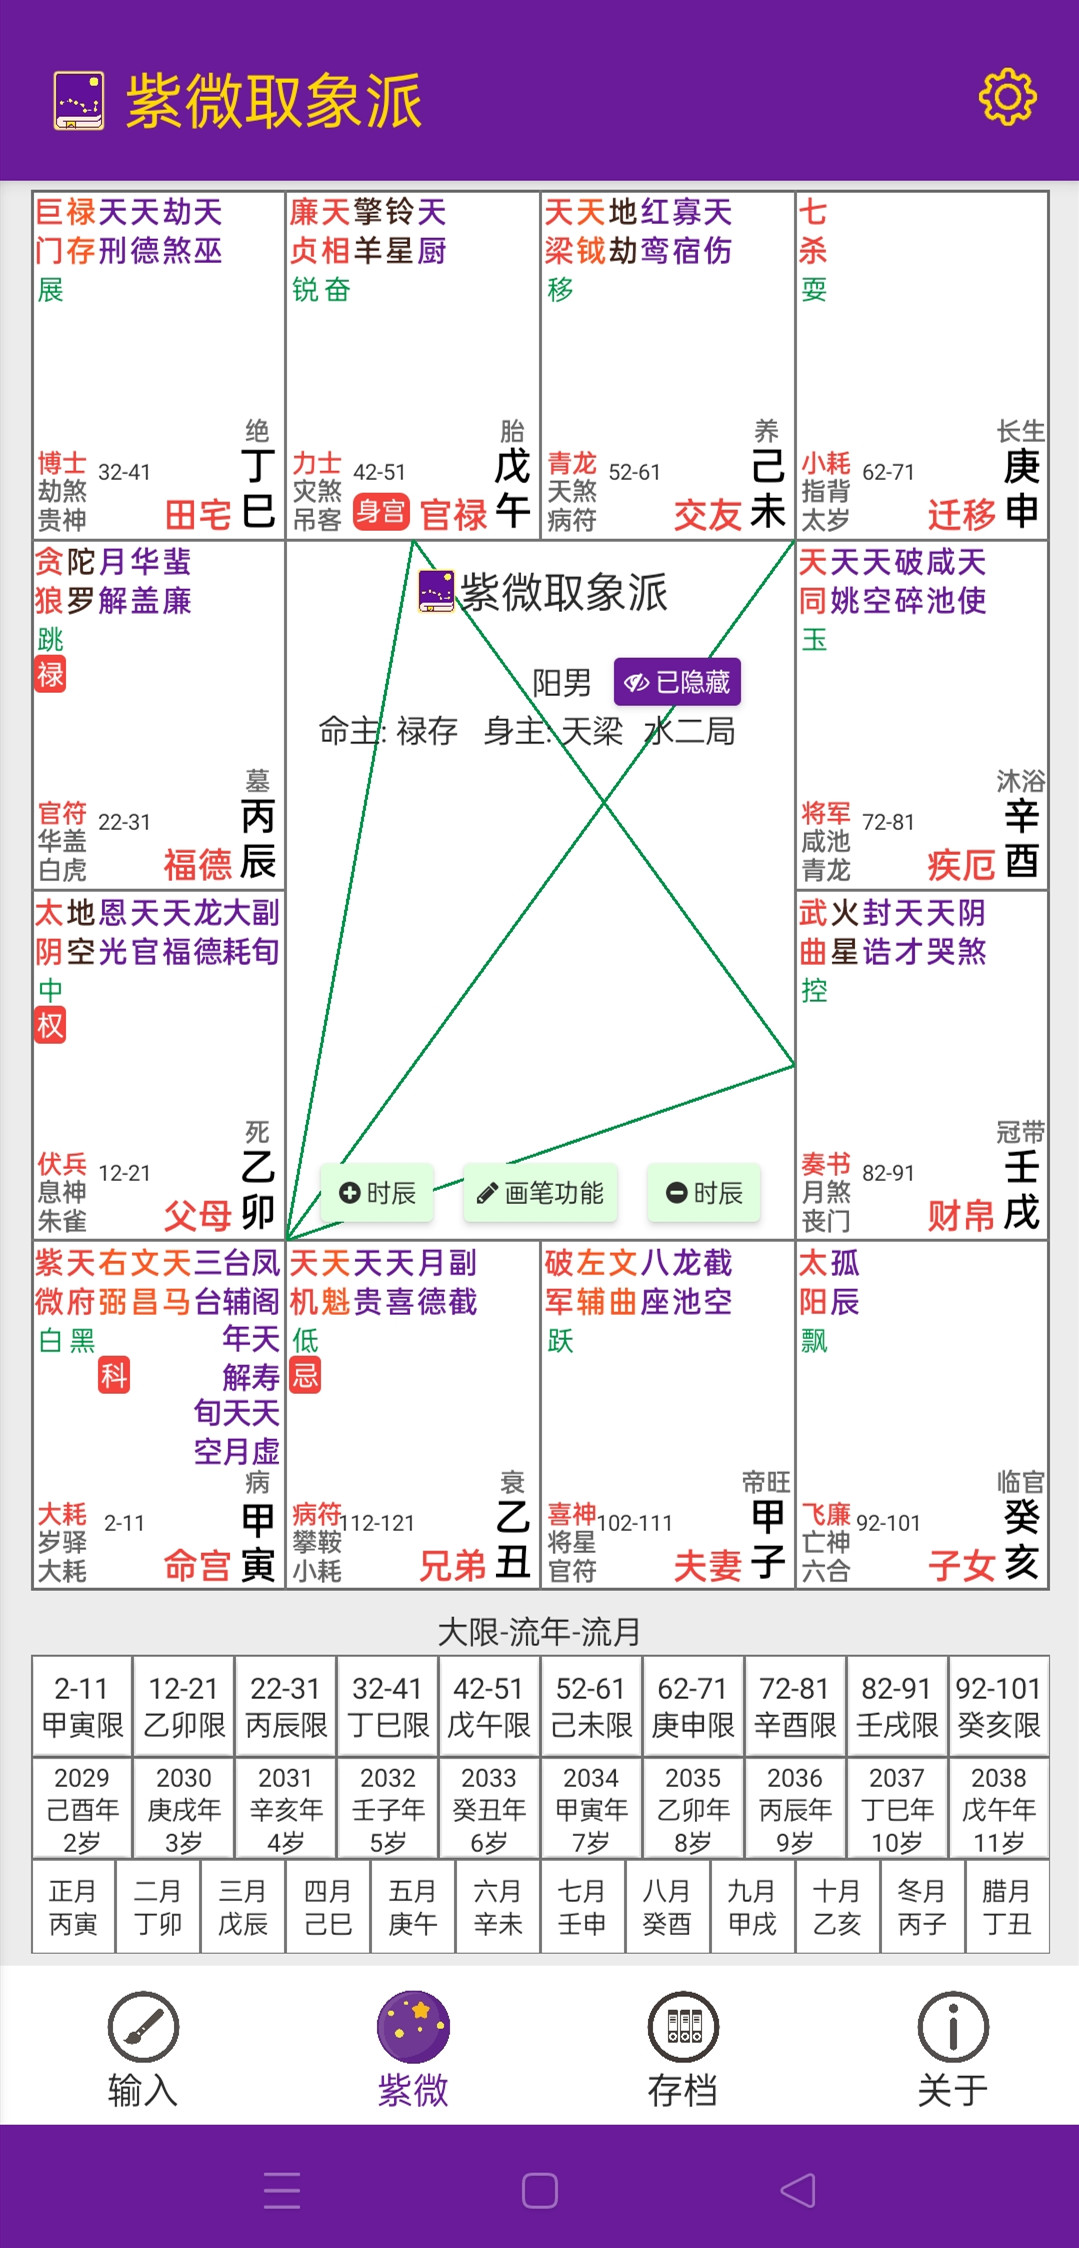 中国古星官图（高清版） - 天玉宫